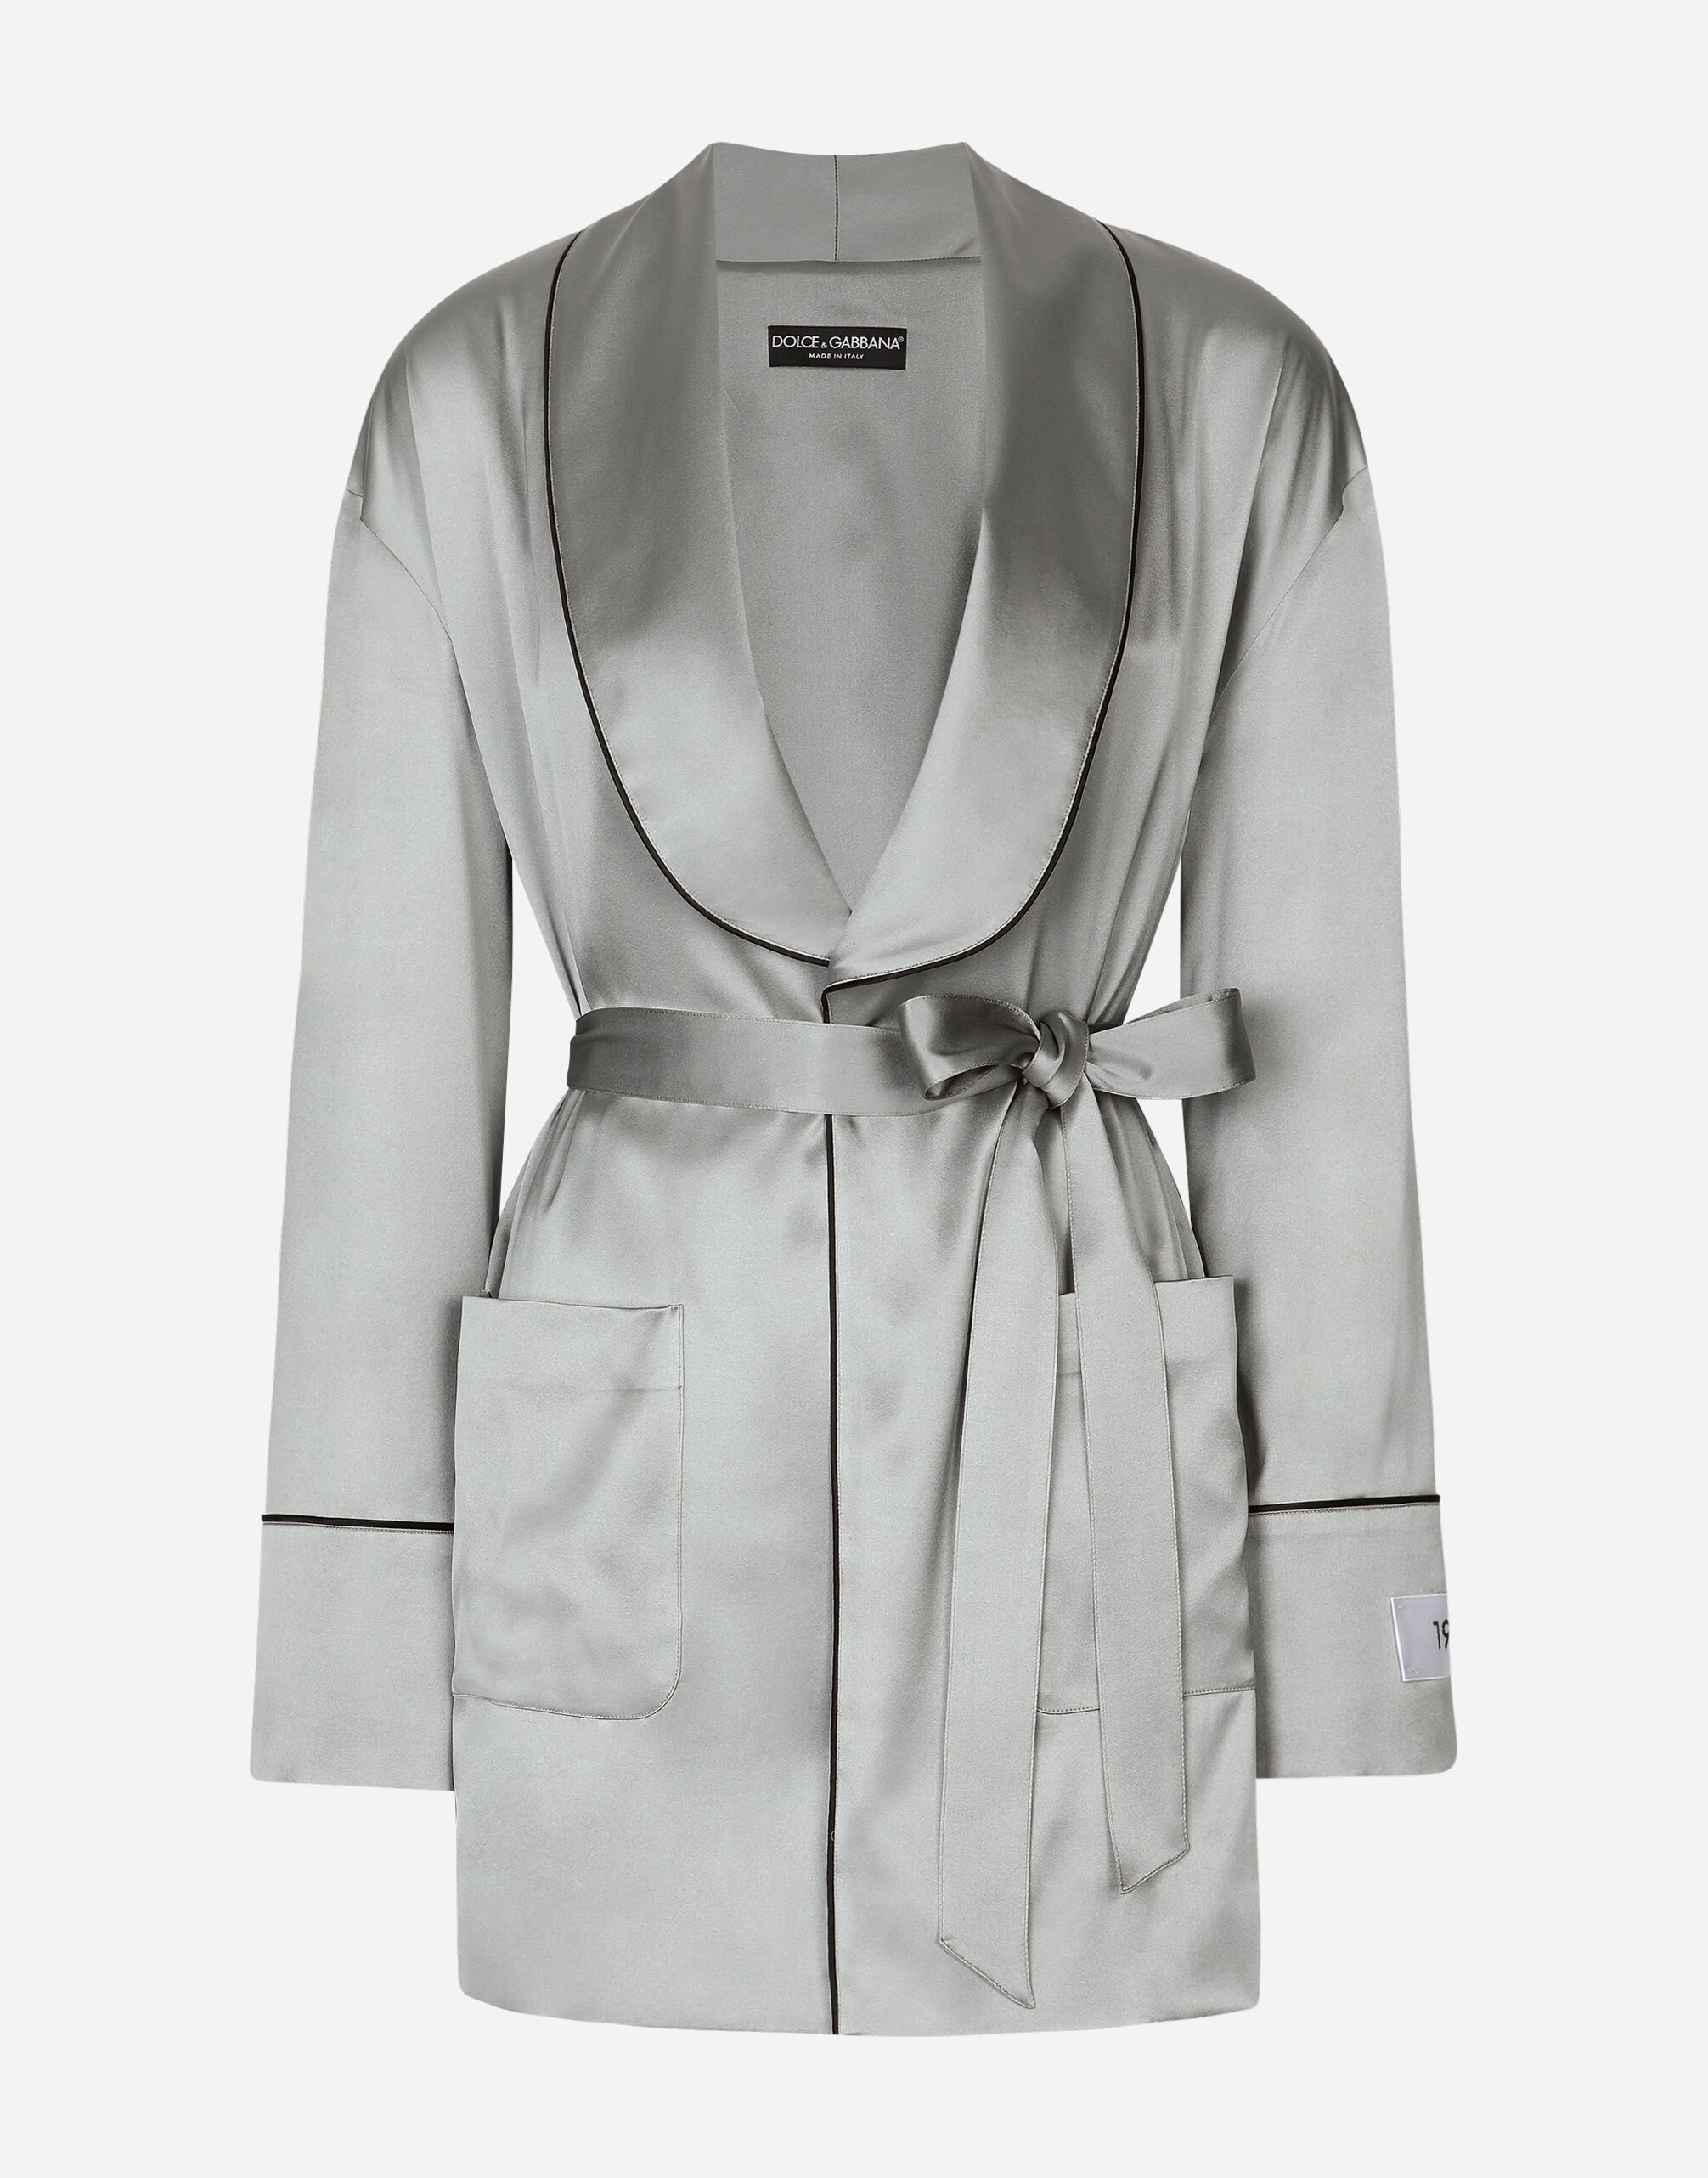 Dolce & Gabbana KIM DOLCE&GABBANA 腰带款缎布睡衣 白 CK1563B5845